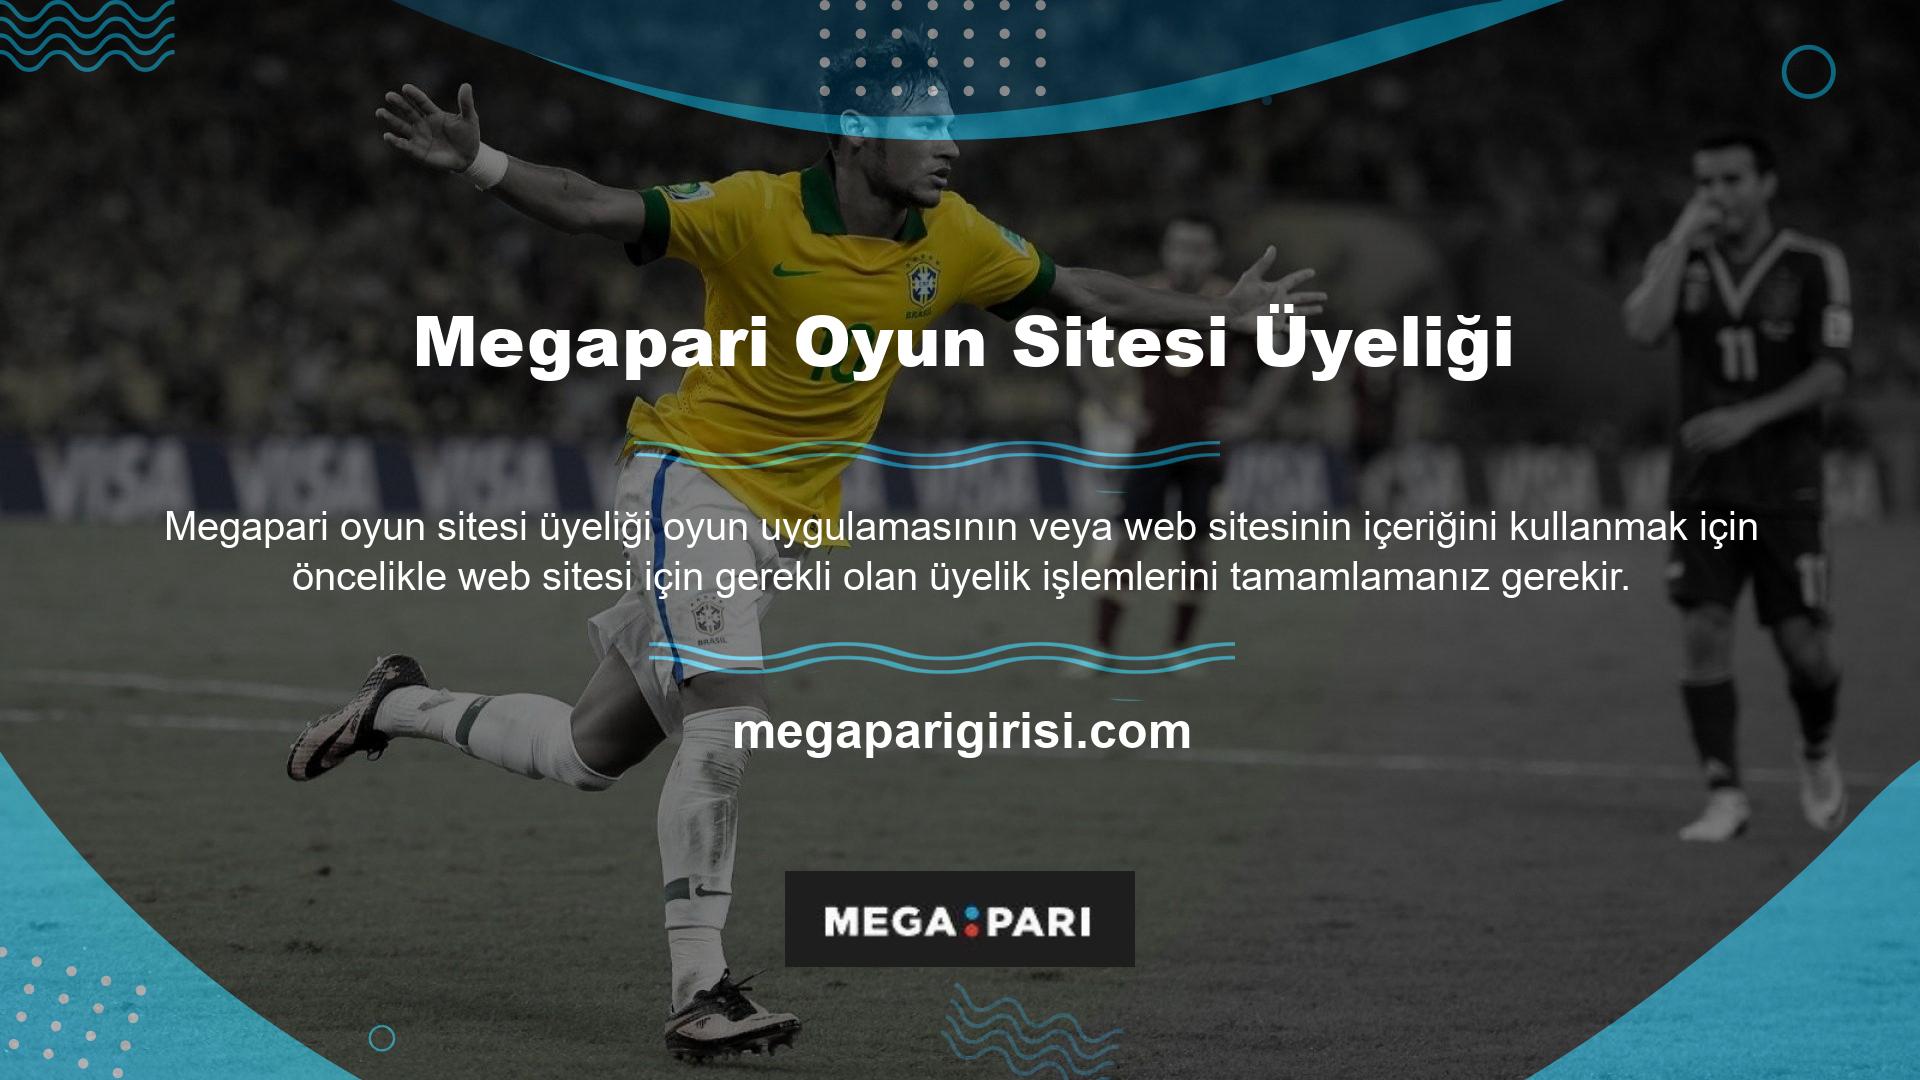 Megapari web sitesi gerekli gördüğü takdirde üyelik esnasında da belge talebinde bulunabilir